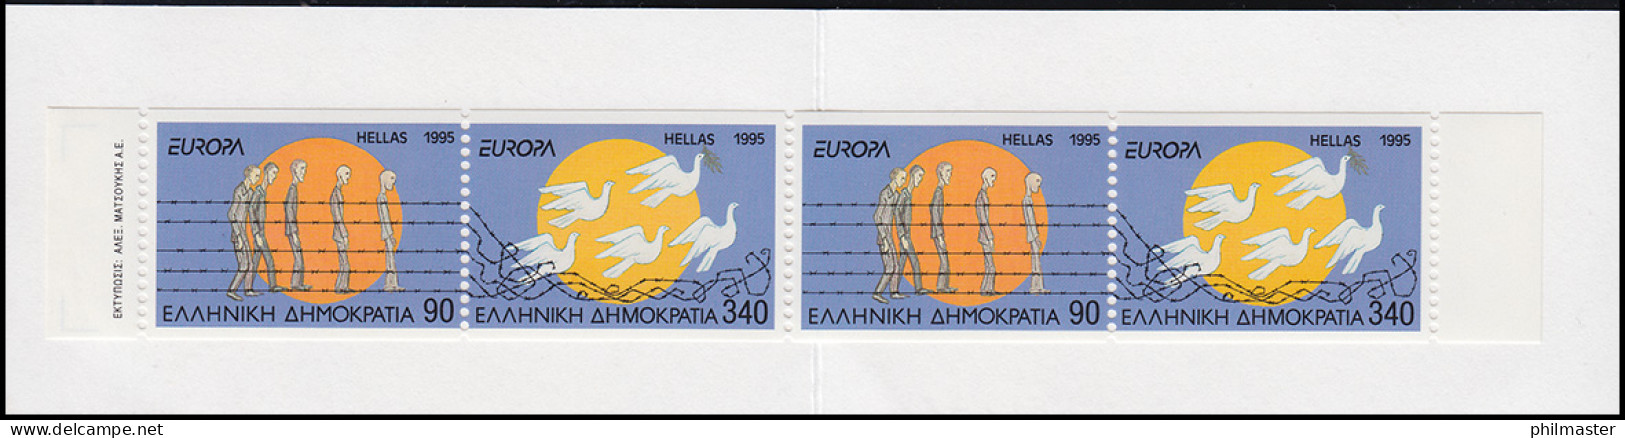 Griechenland Markenheftchen 18 Europa 1995, ** Postfrisch - Libretti